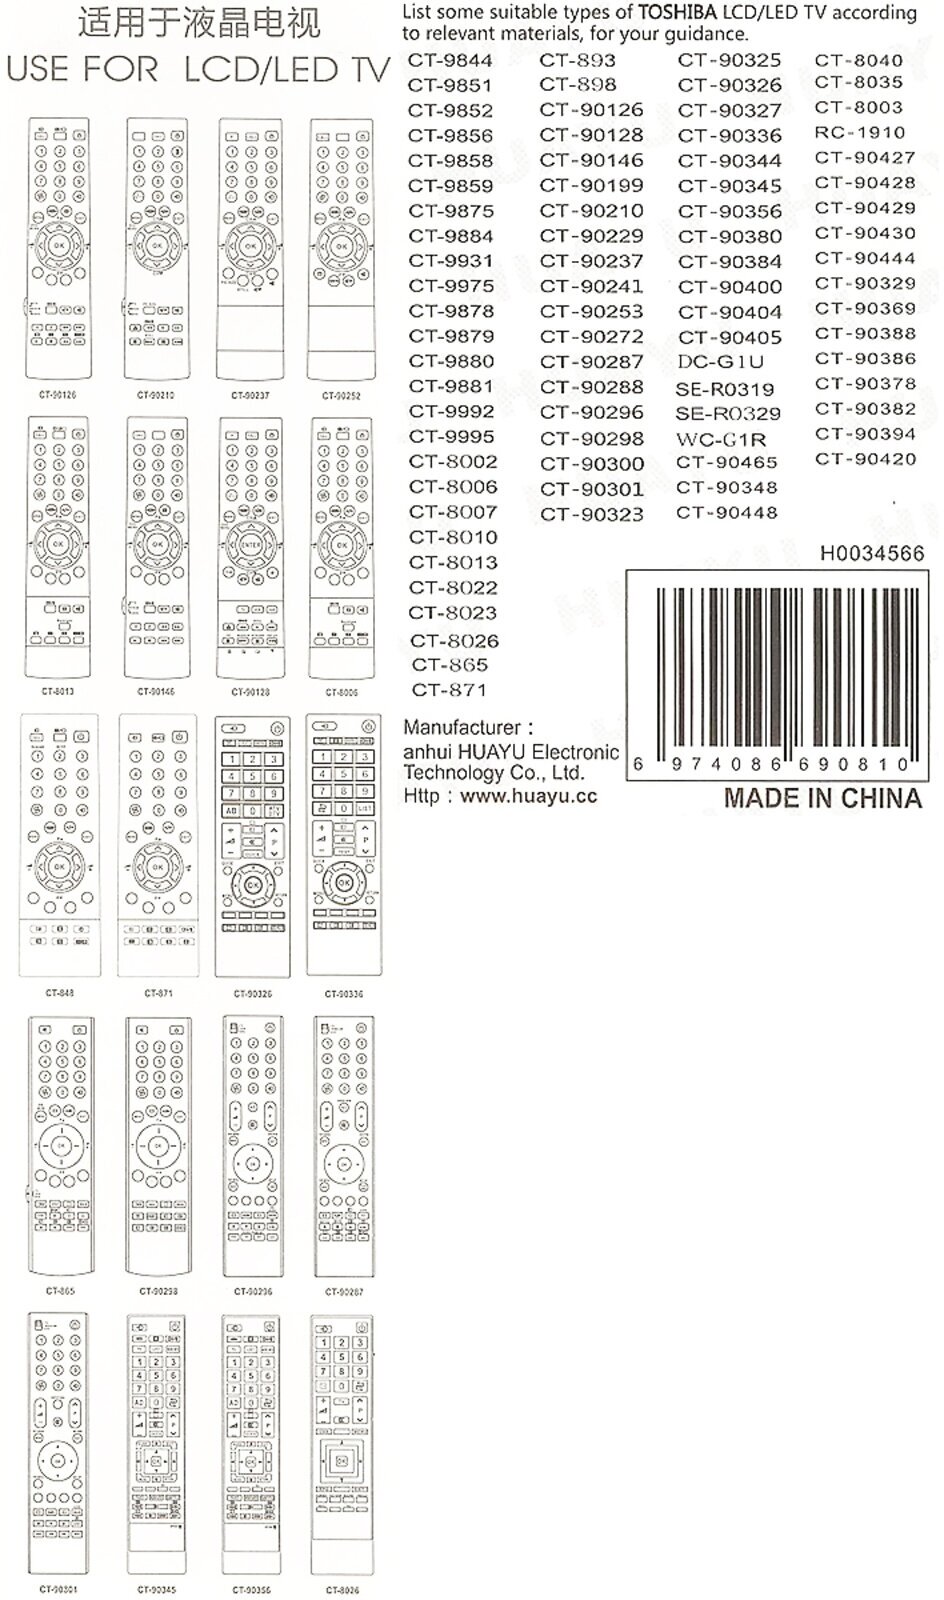 Пульт дистанционного управления Huayu для Toshiba RM-L890+(CT-90326) HRM716 - фото №2